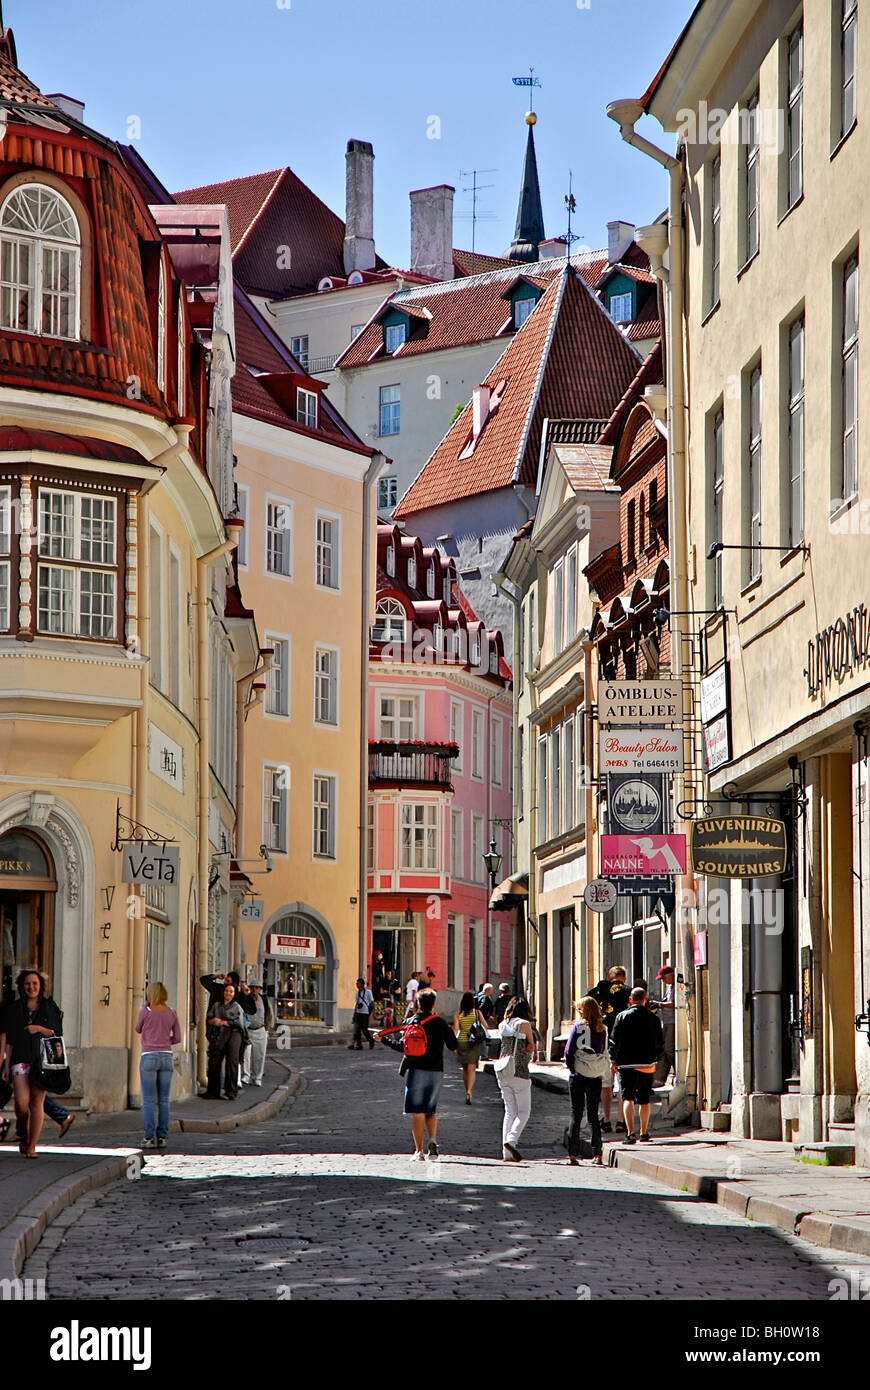 Pikk street in the old town of Tallinn, Estonia Stock Photo